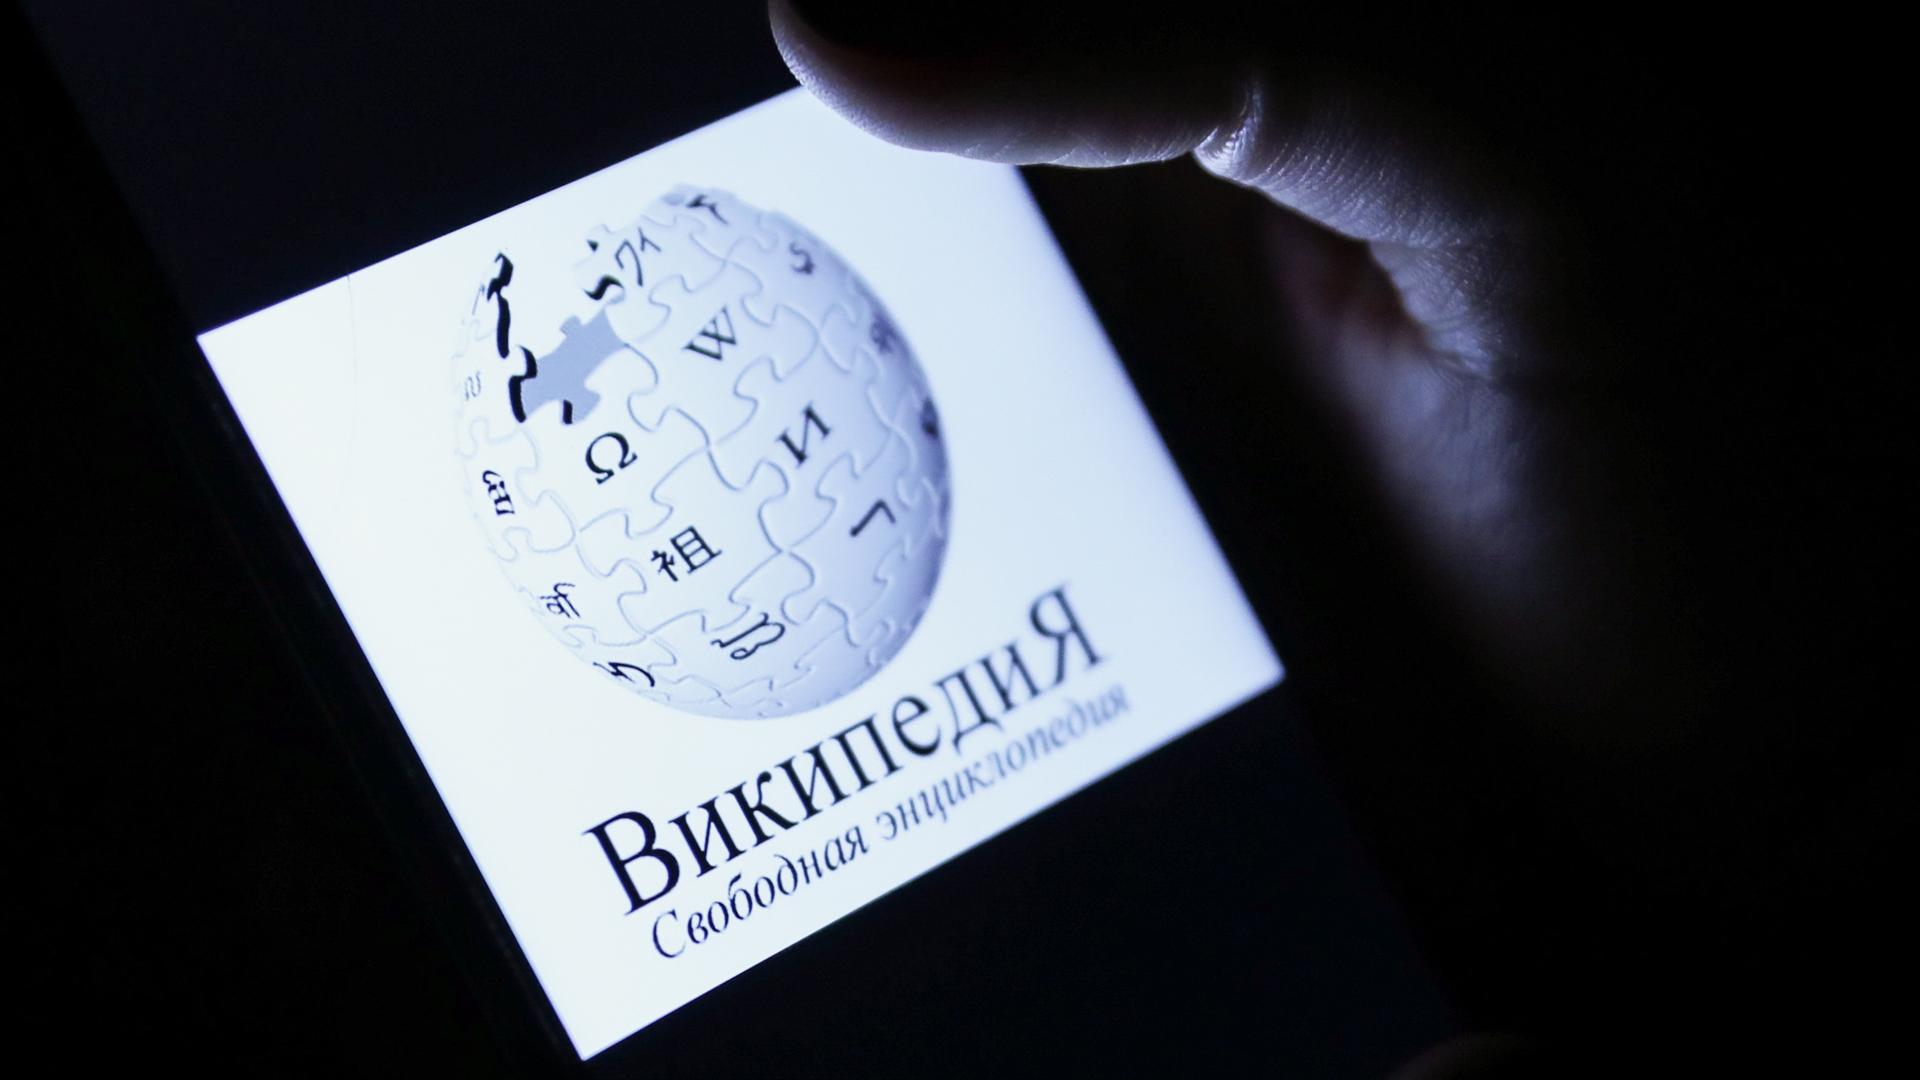 Das Logo von Wikipedia mit russischer Schrift auf eine, Handydisplay.